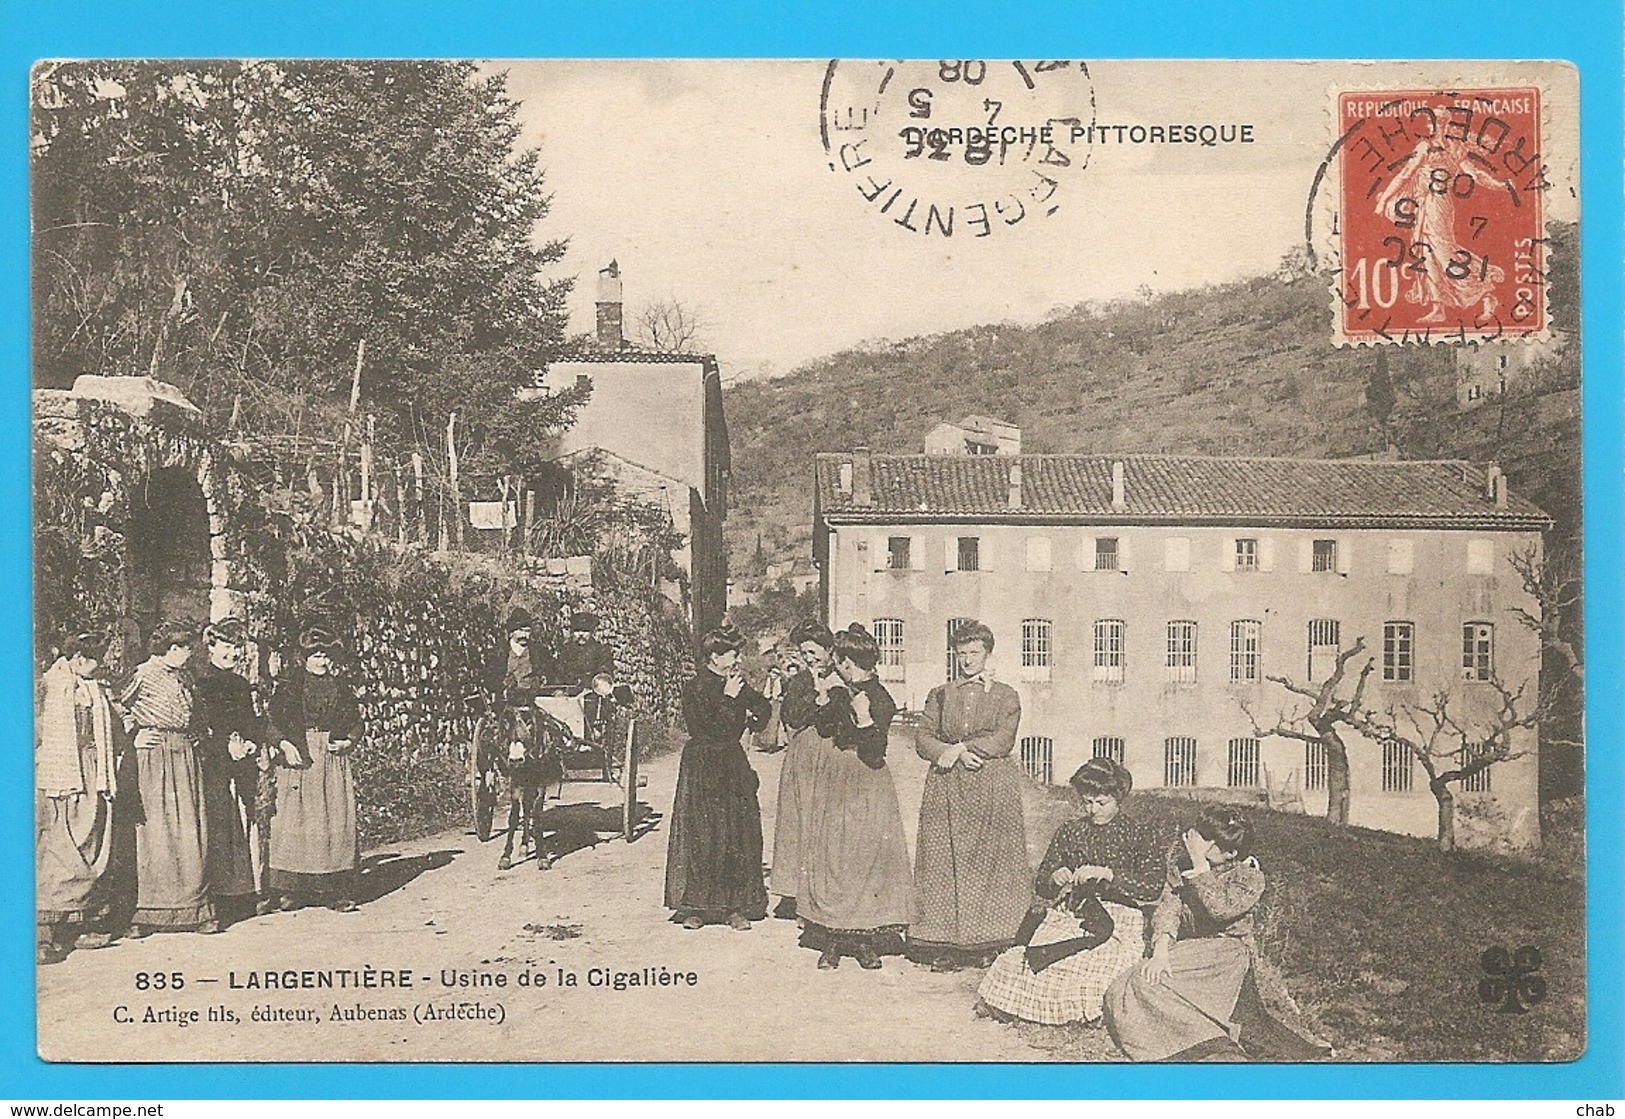 835 -- LARGENTIERE - Usine De La Cigalière - Voyagée 1908 -- USINE - Ardéche - Largentière - Largentiere